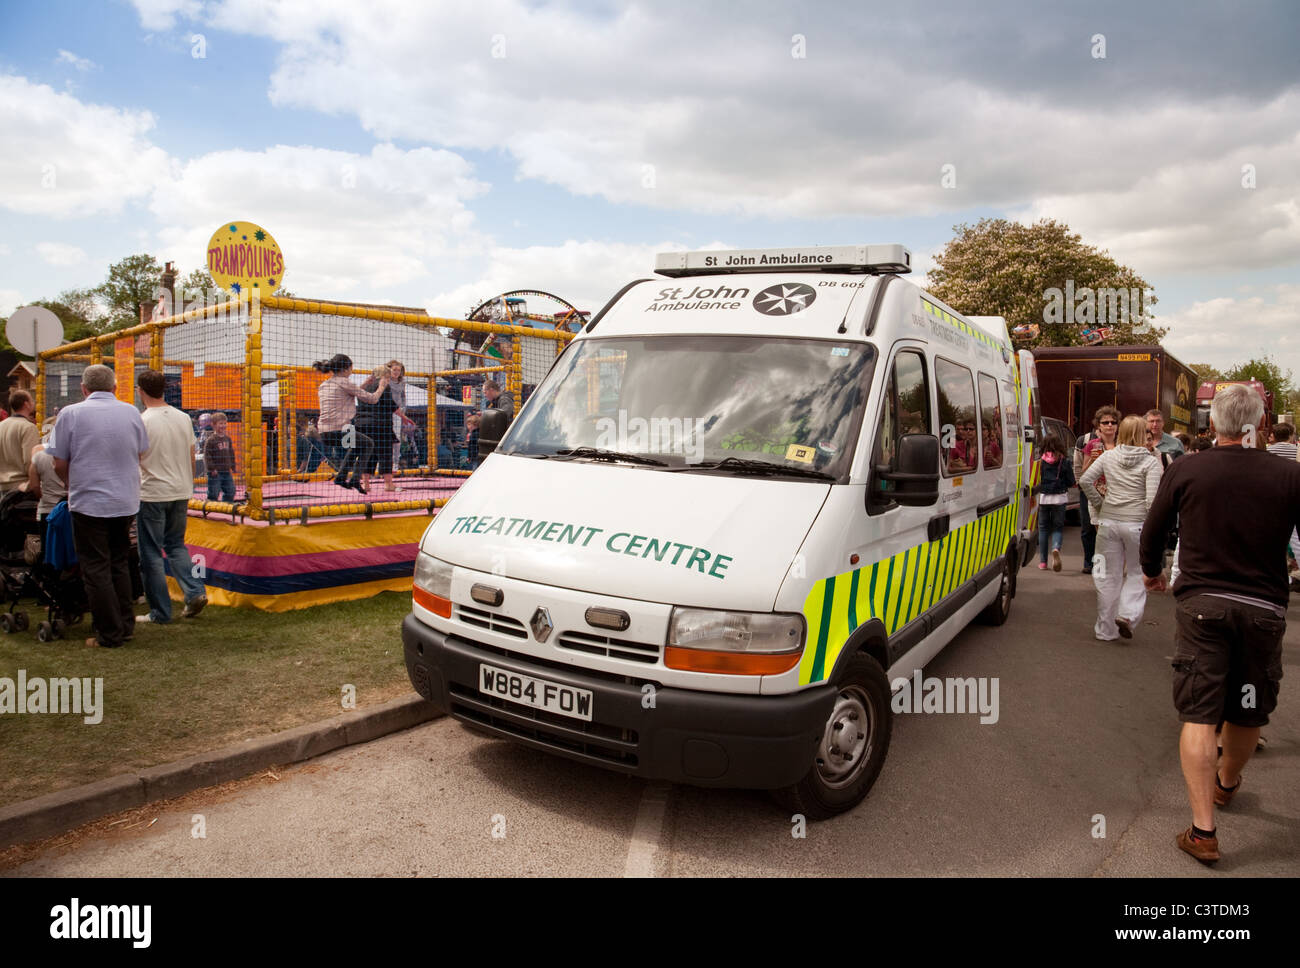 St John Ambulance sur le stand par lors d'une fête du village, village à Cambridgeshire UK Banque D'Images